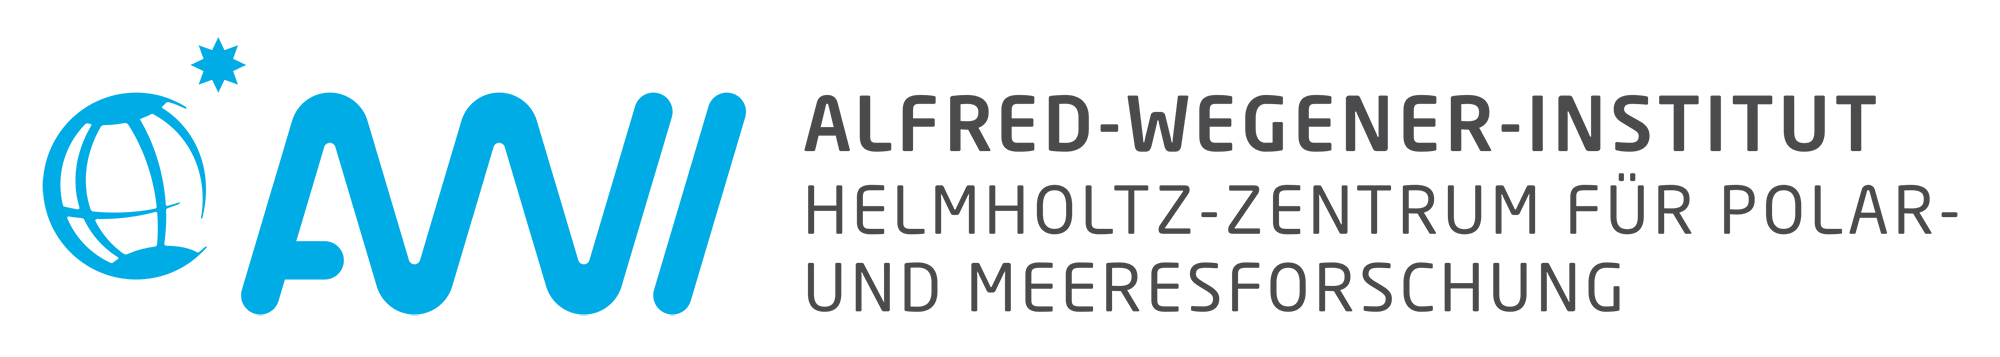 Alfred-Wegener-Institut Helmholtz-Zentrum für Polar- und Meeresforschung 